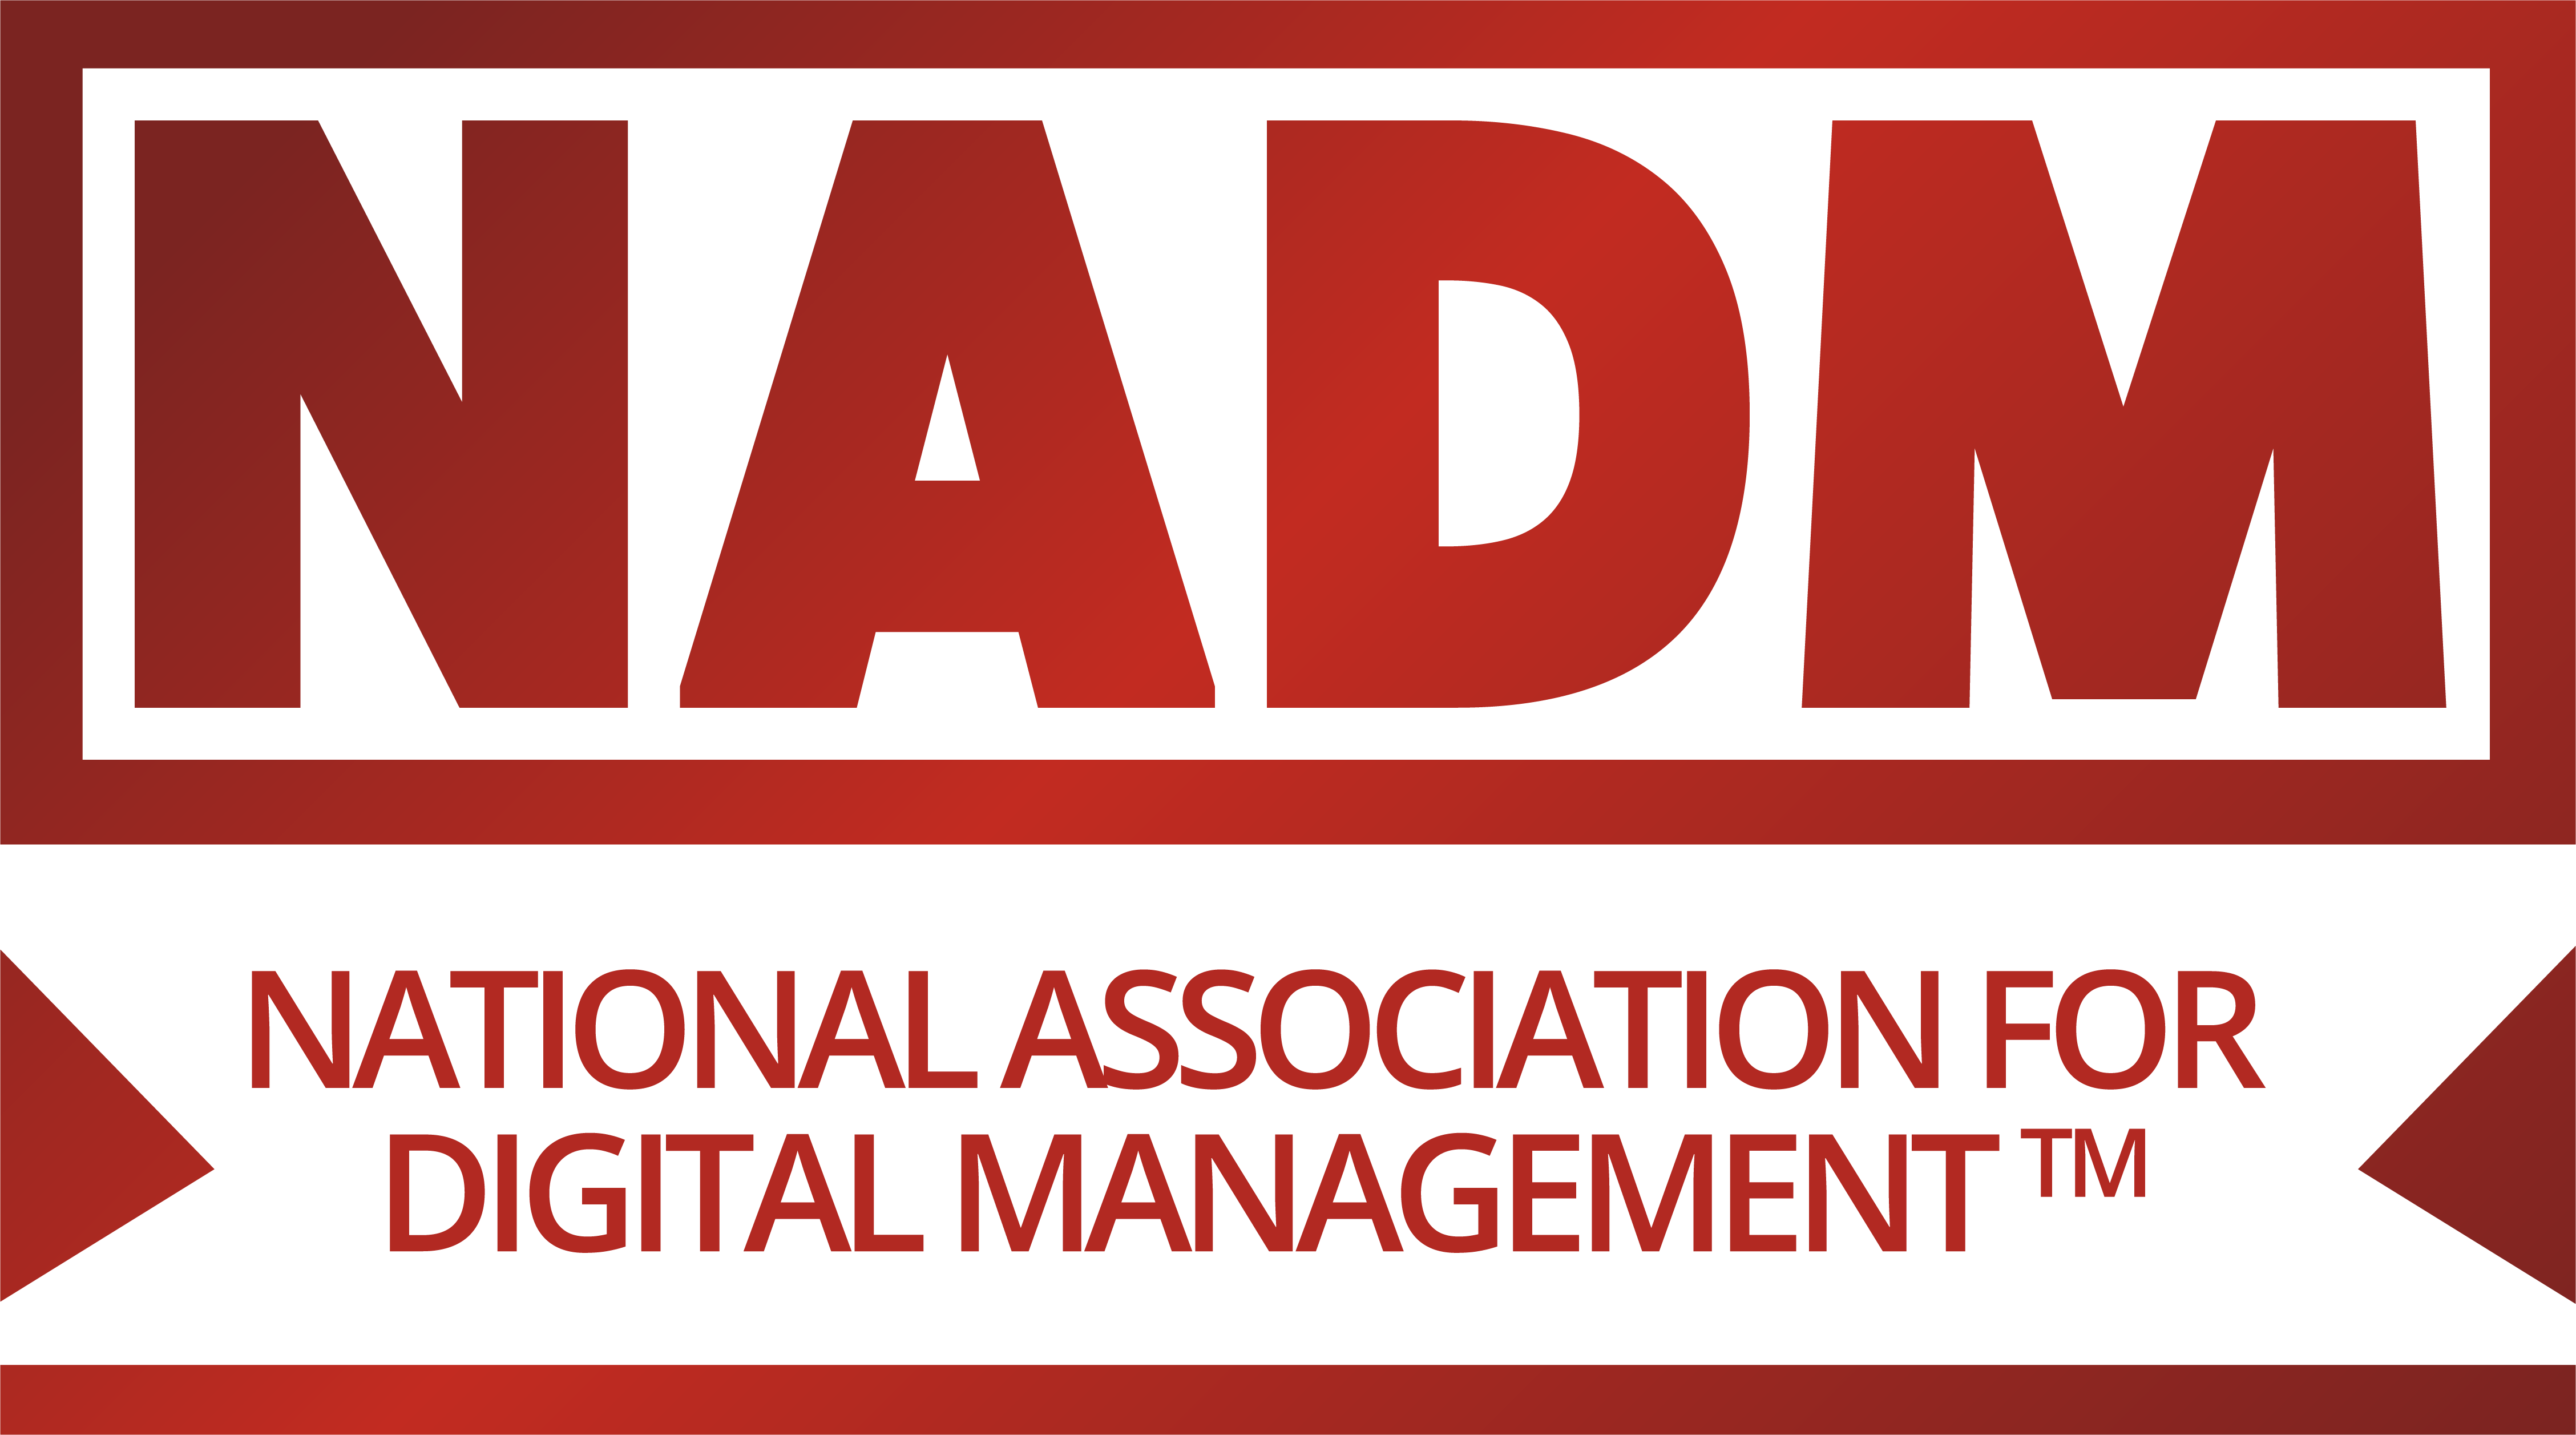 National Association for Digital Management - NADM